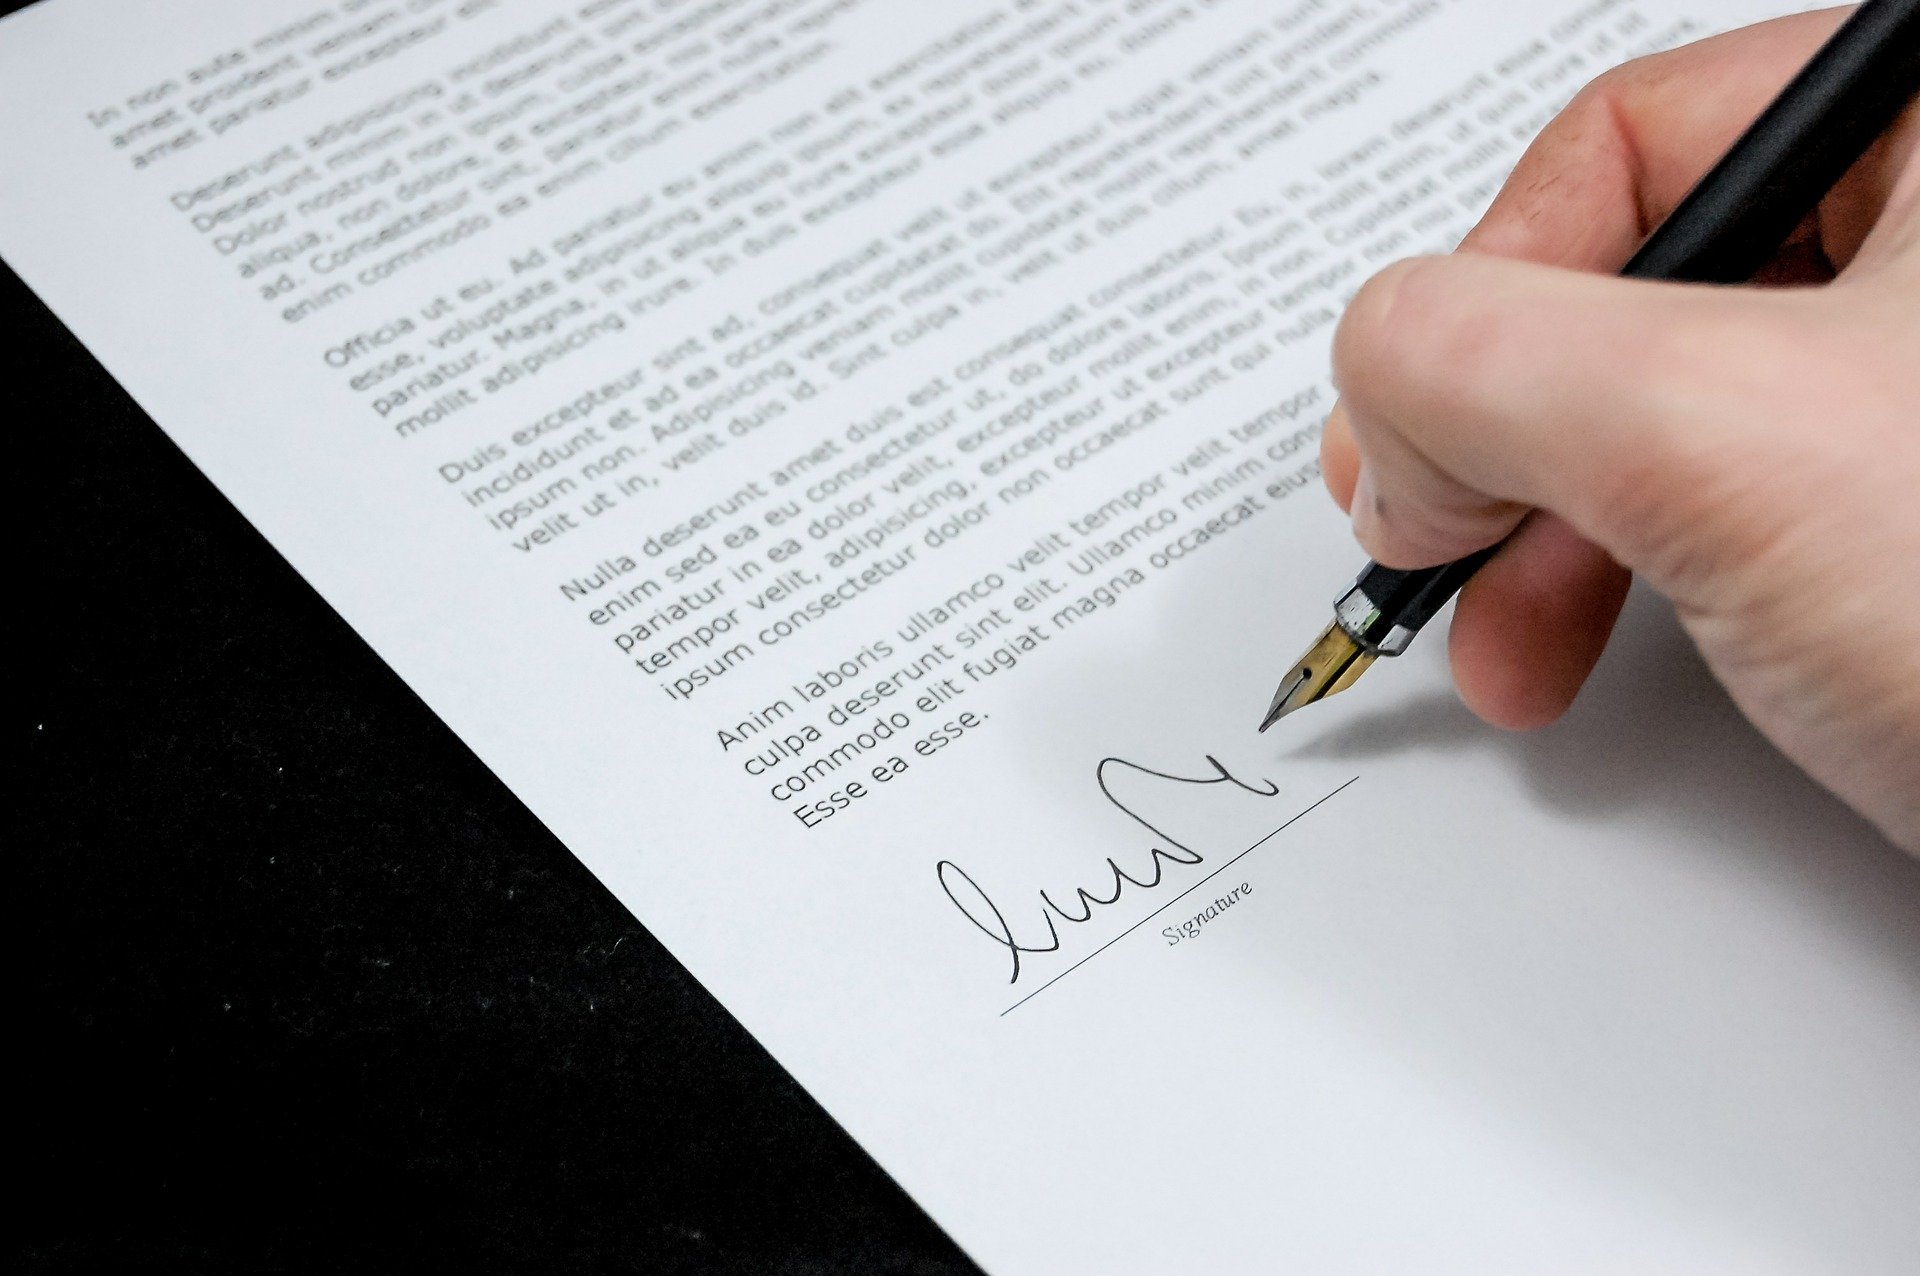 signature line of document